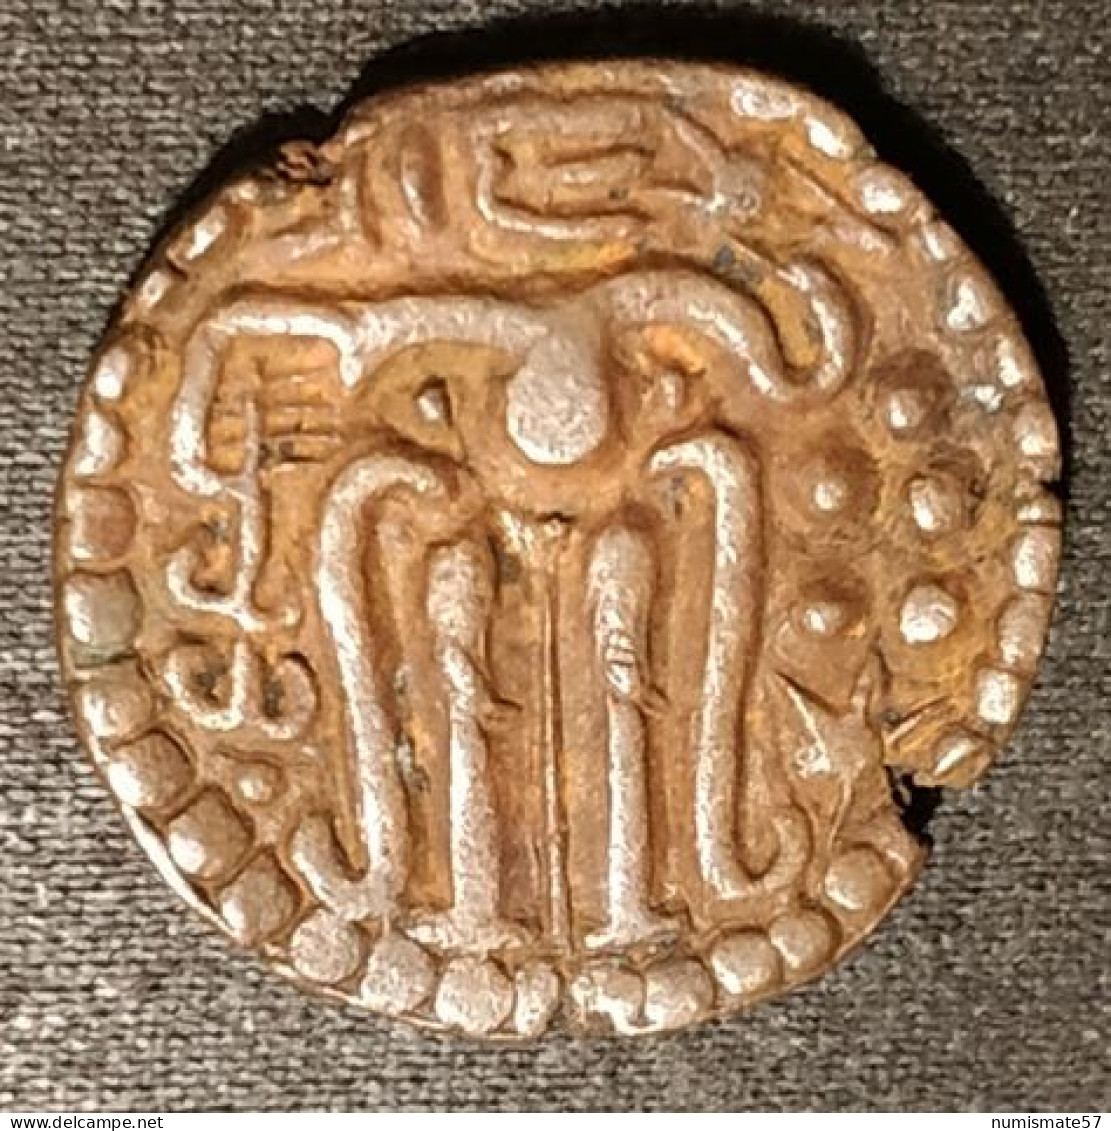 SRI LANKA - CEYLAN - CEYLON - 1 MASSA 1236 - 1271 - Parakramabahu II - Sri Lanka (Ceylon)